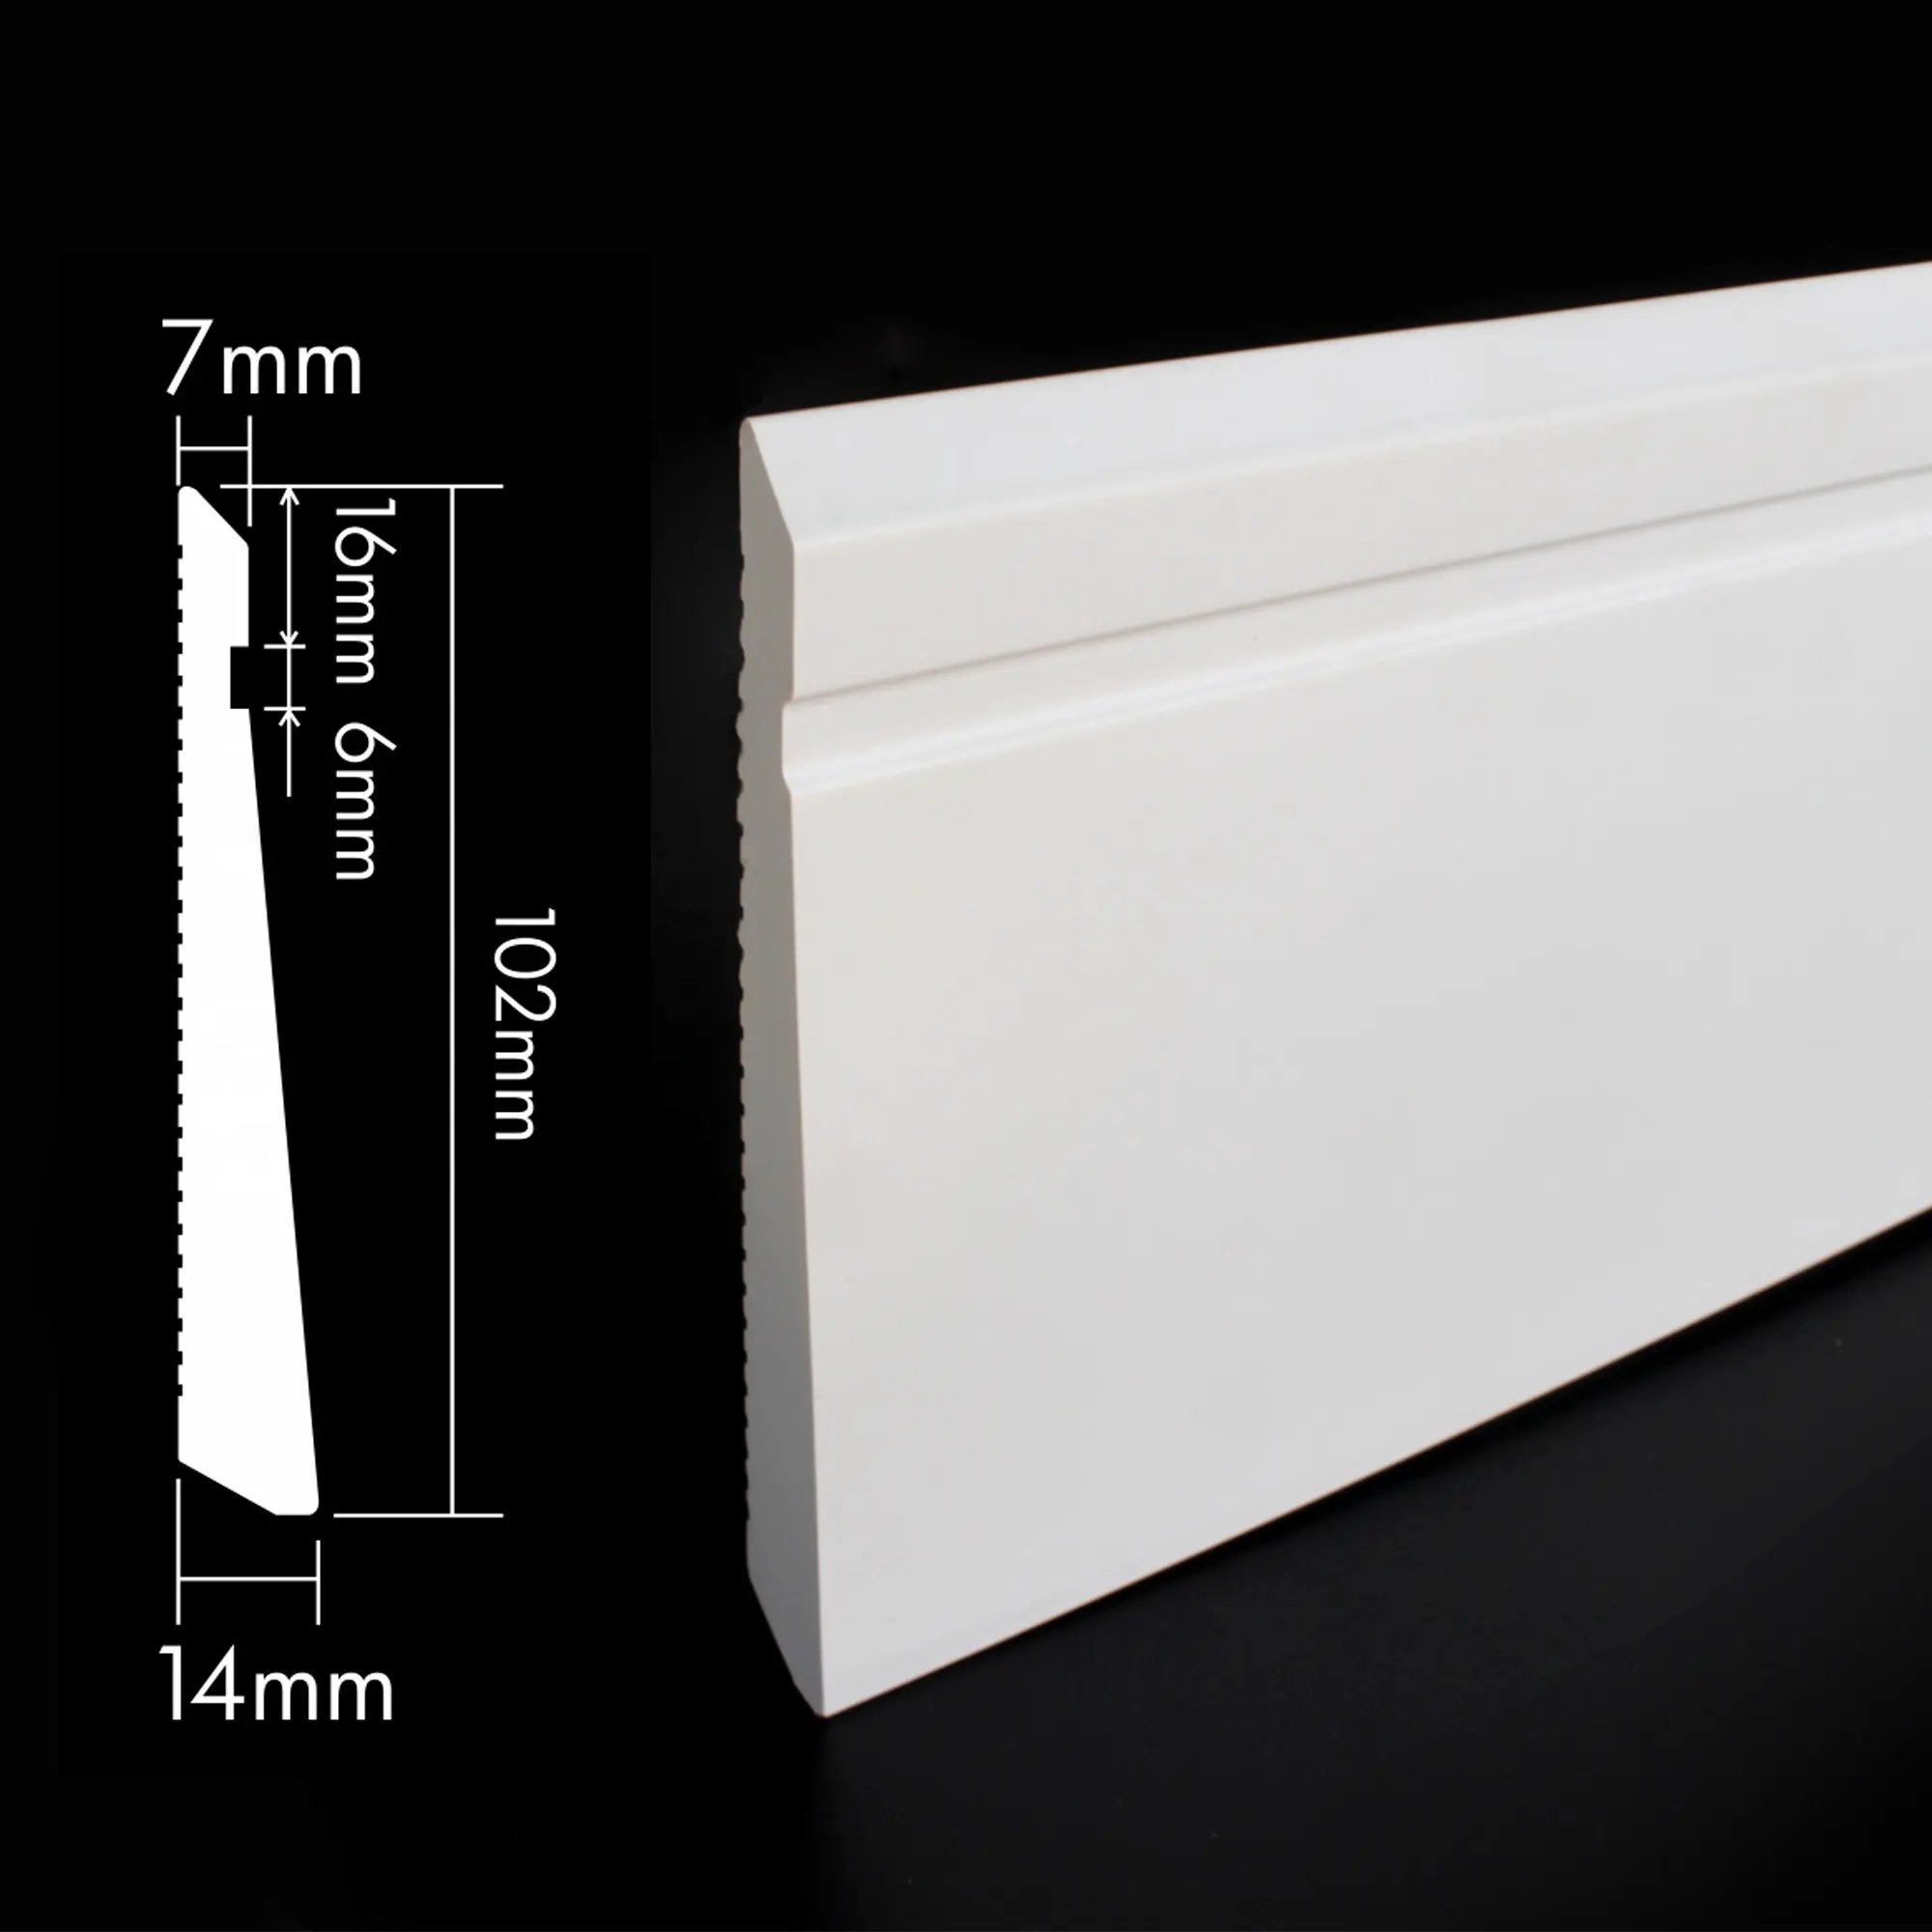 ألواح حاشية مناسبة للجدران بجودة عالية ولون أبيض مناسبة للياسات الجانبية من RAITTO S102-A، ألواح حاشية مثبتة